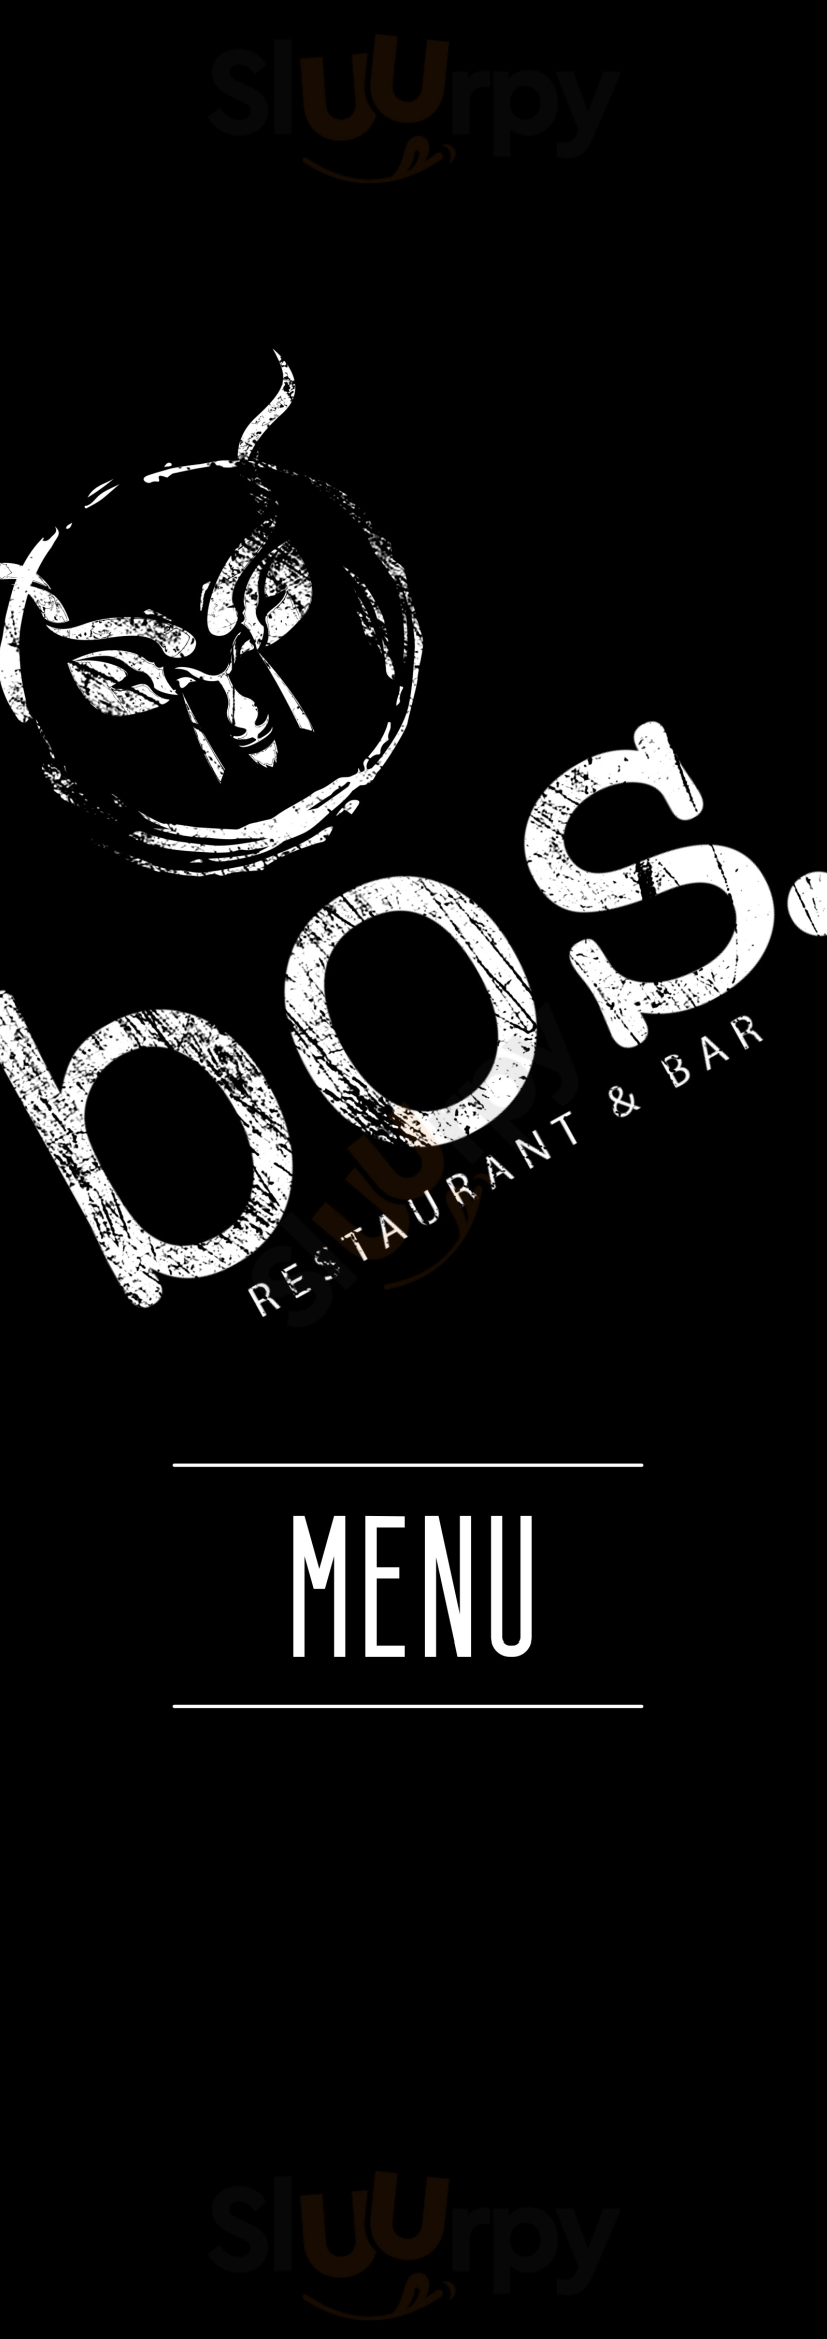 Bos. Restaurant & Bar Marloth Park Menu - 1